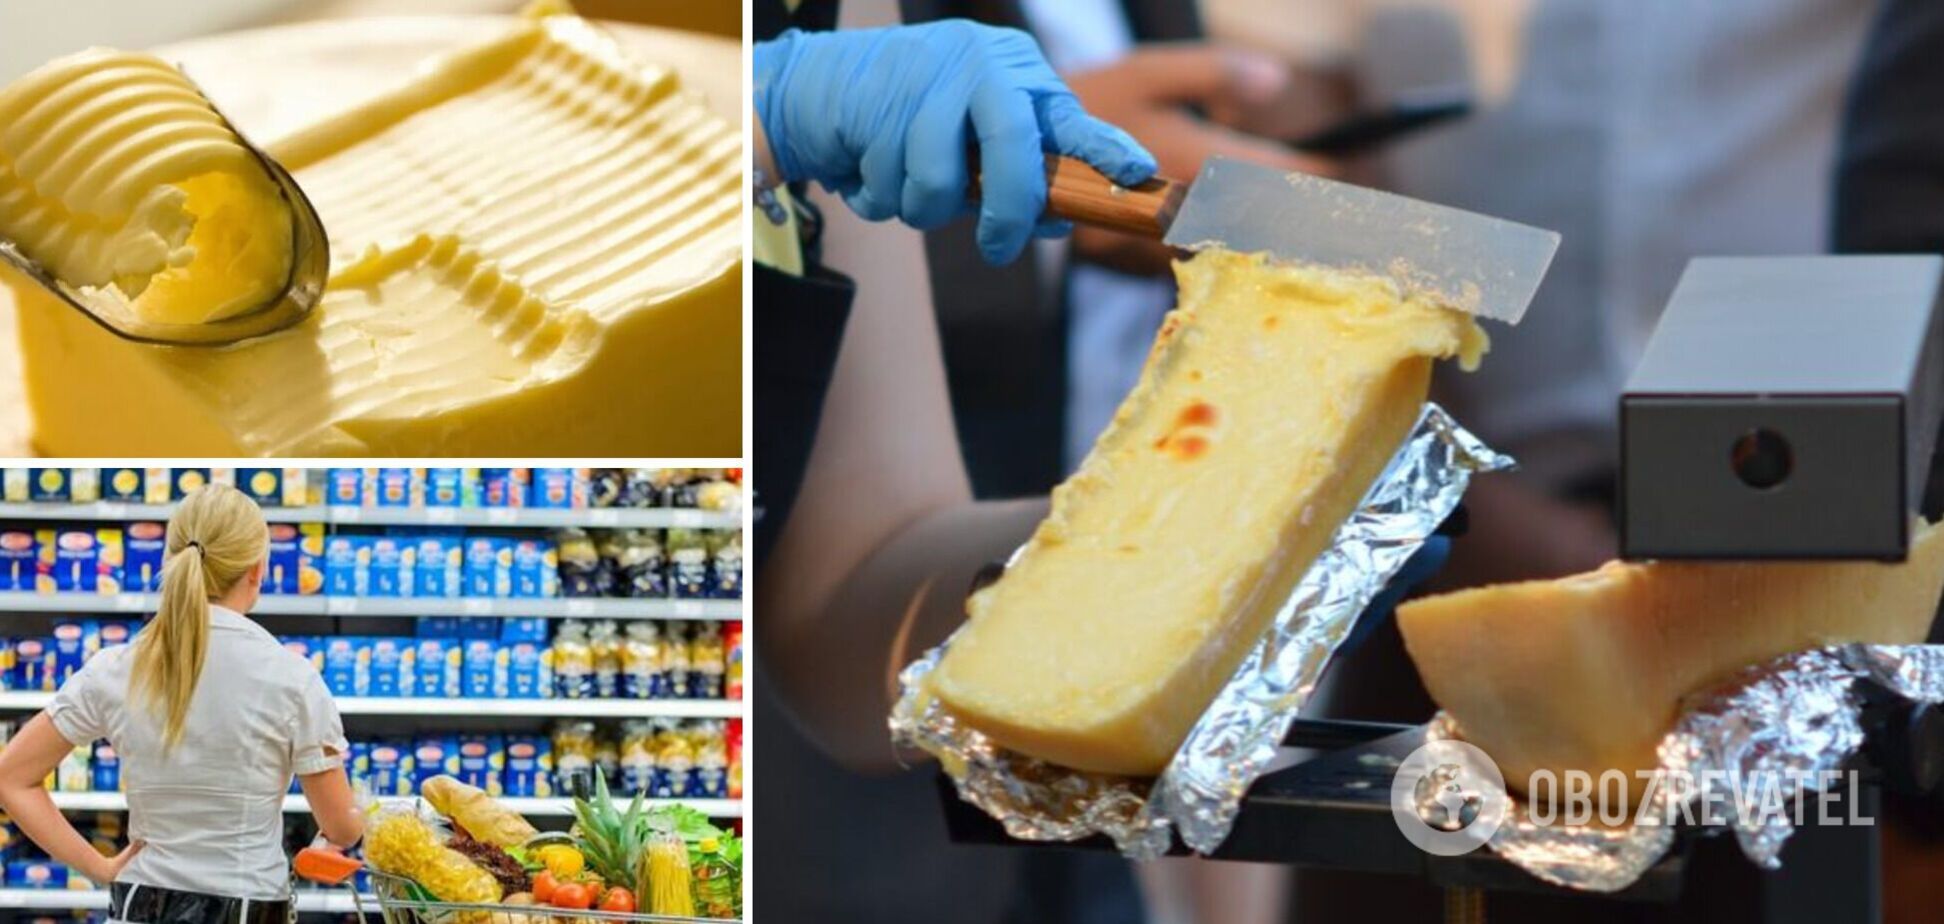 Как не купить фальсификат сыра или масла в магазине